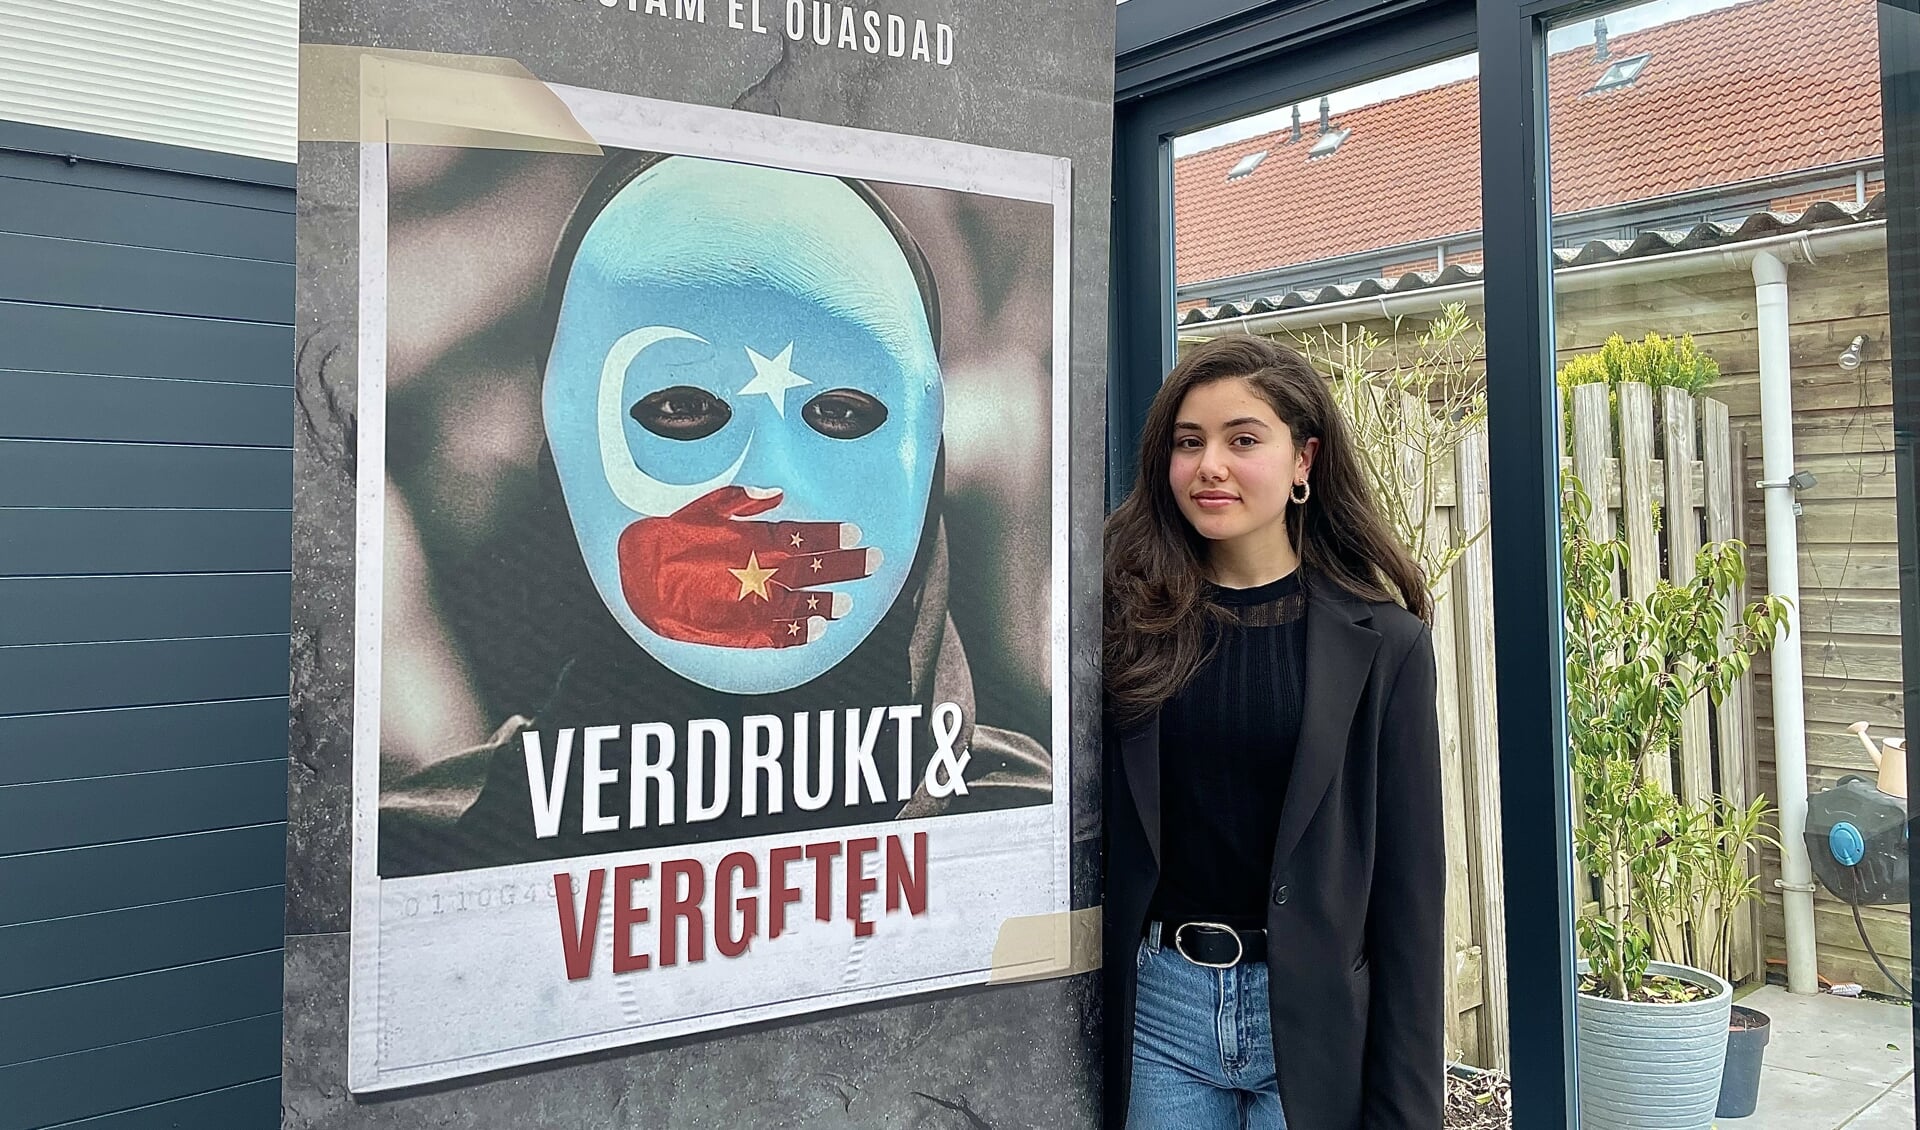 • Ouiam El Ouasdad maakt voor haar profielwerkstuk een documentaire over Oeigoeren.